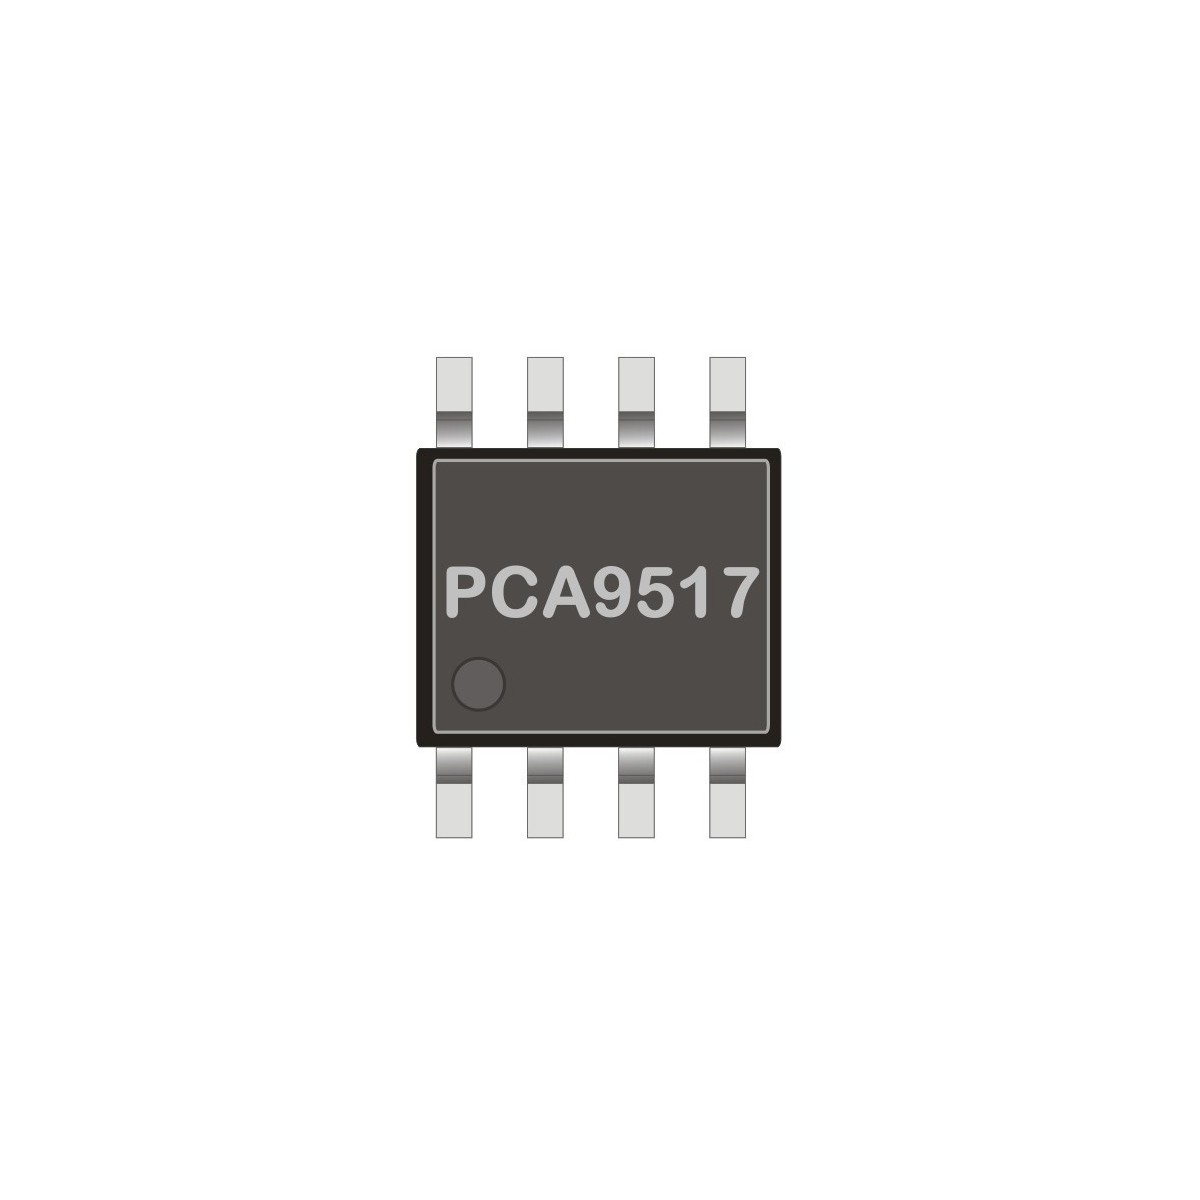 I2C Bus Repeater PCA9517